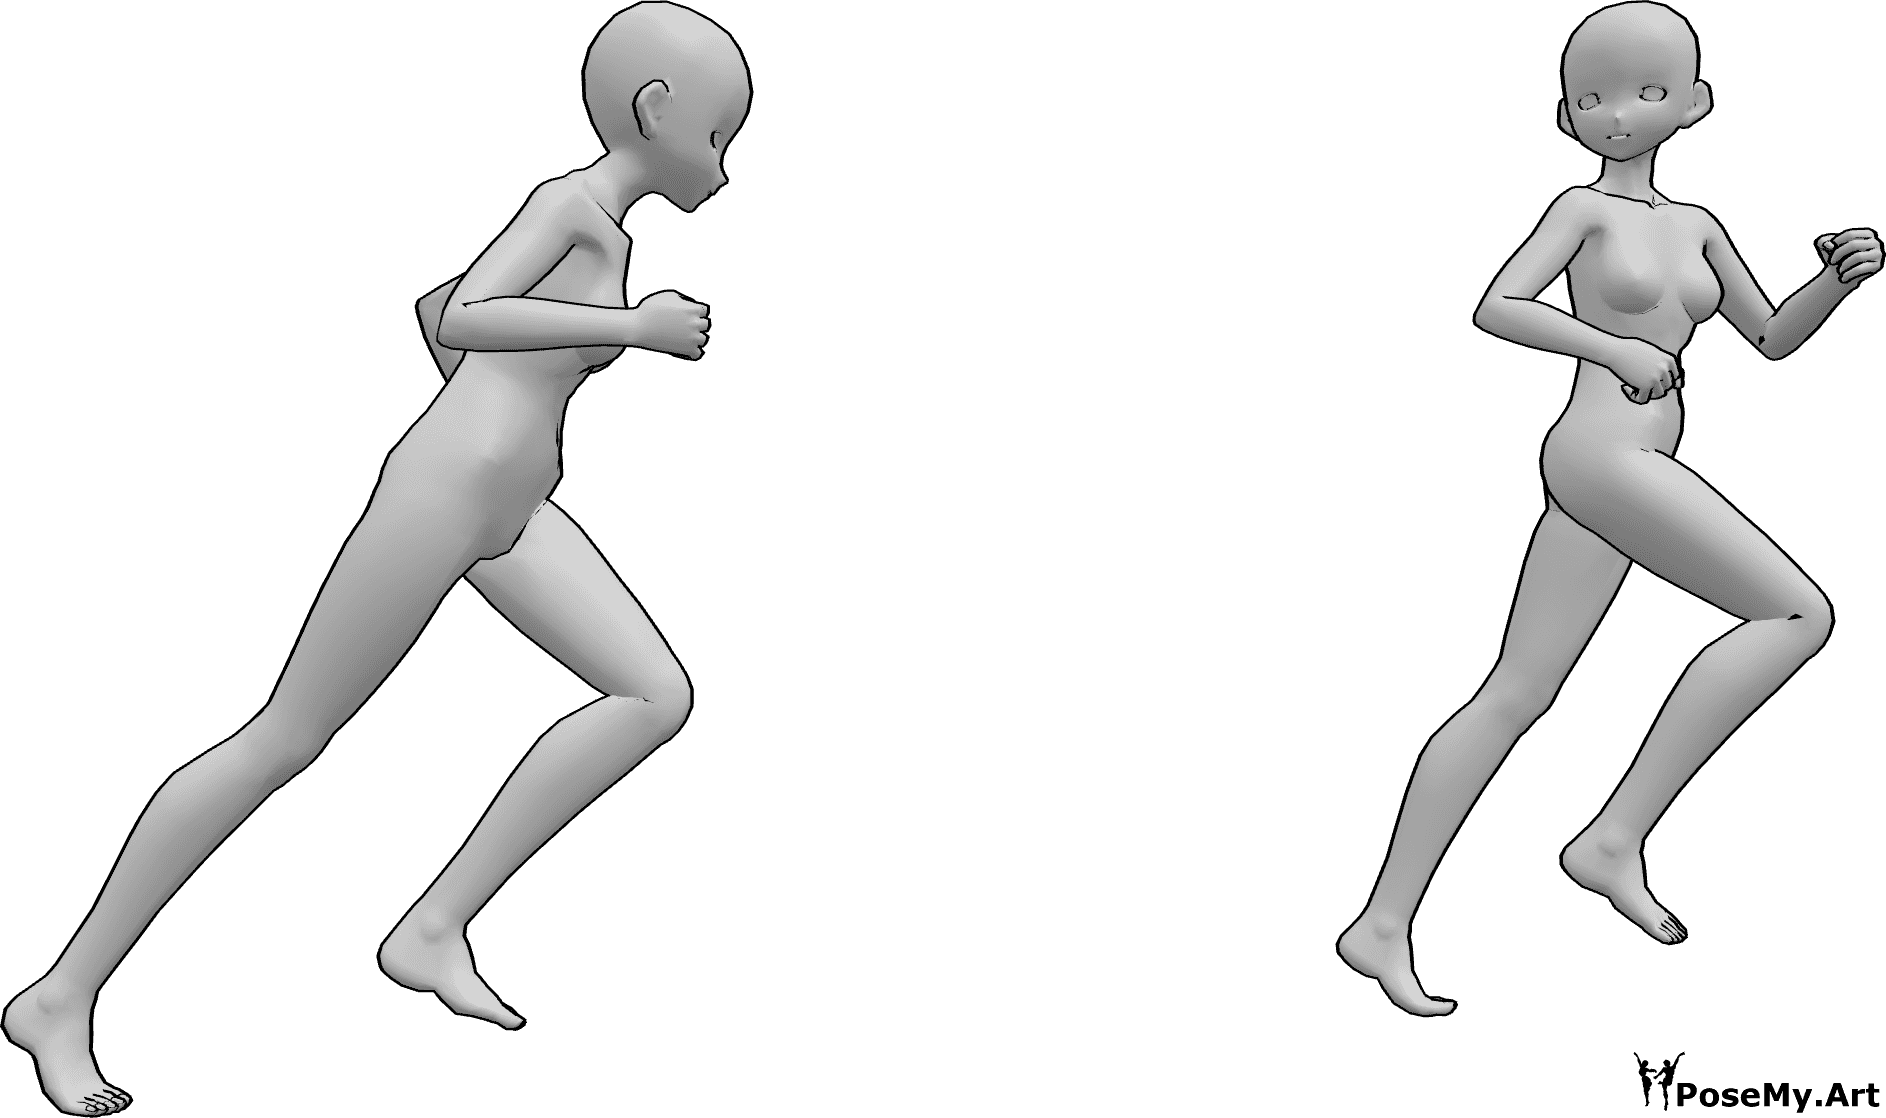 Posen-Referenz- Anime läuft jagende Pose - Zwei Anime-Frauen rennen, eine jagt die andere, die zurückschaut, während sie wegläuft